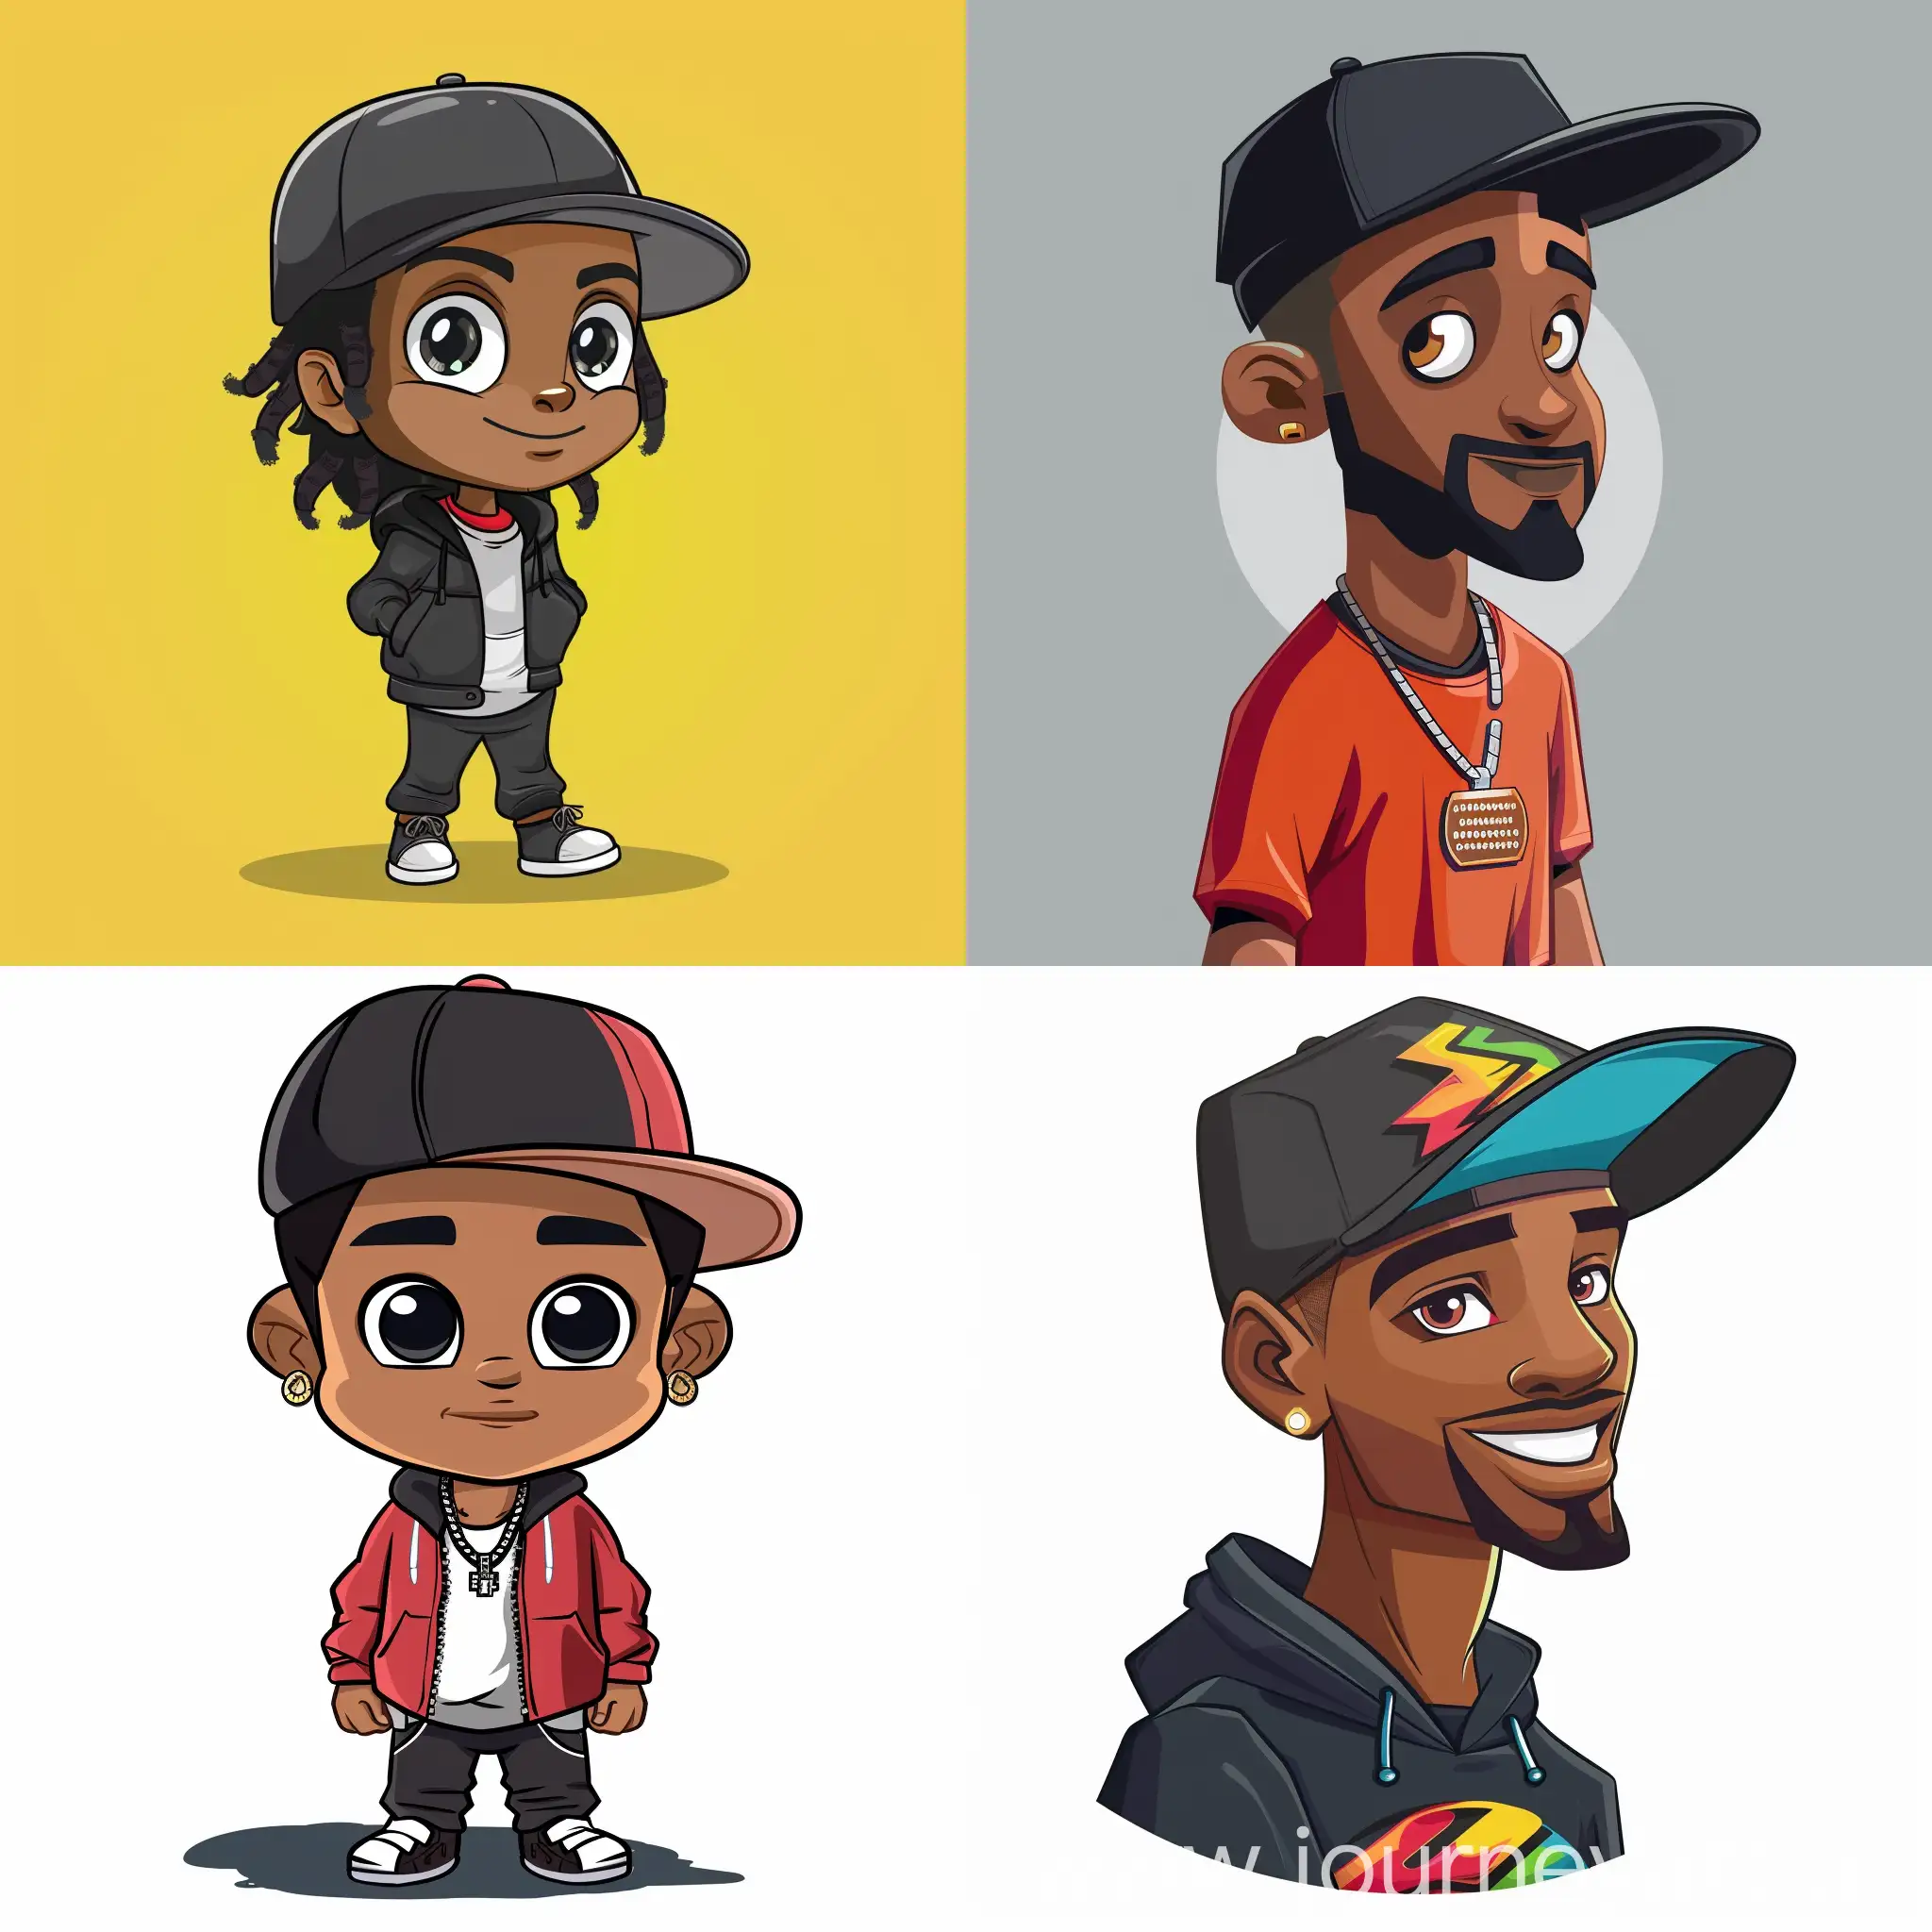 rapper cartoon character with cap
